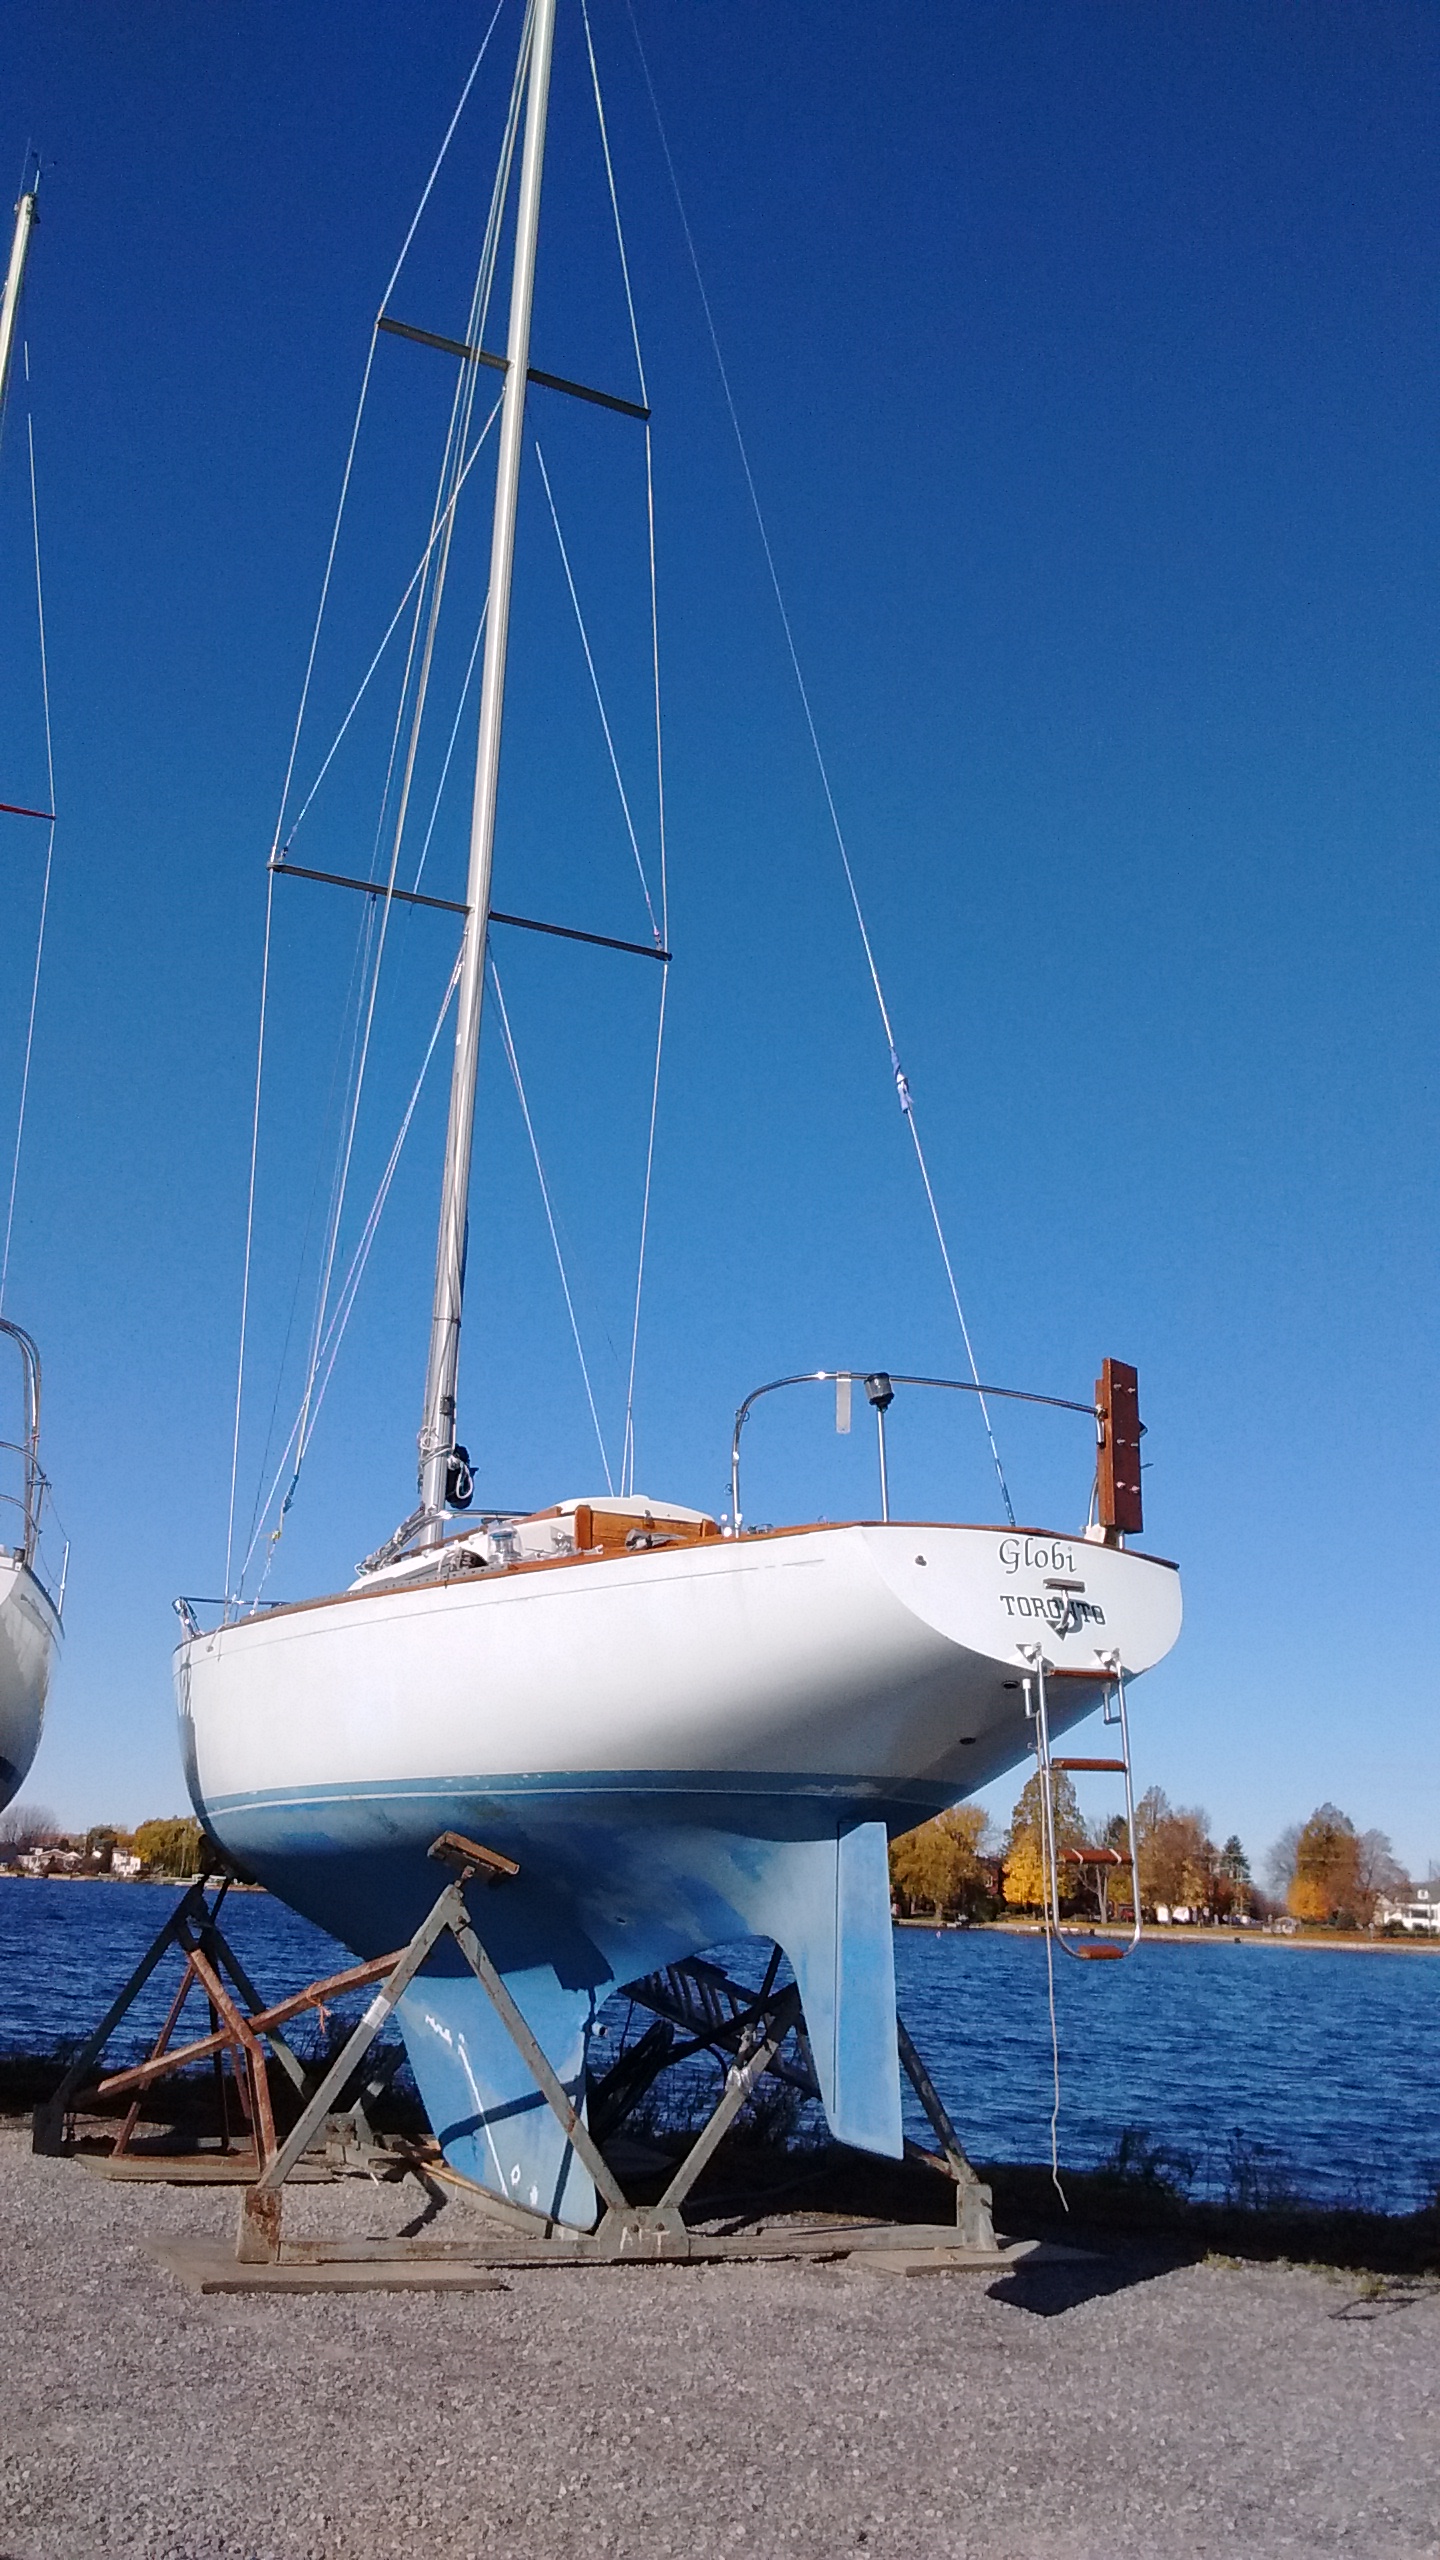 hughes 38 sailboat review